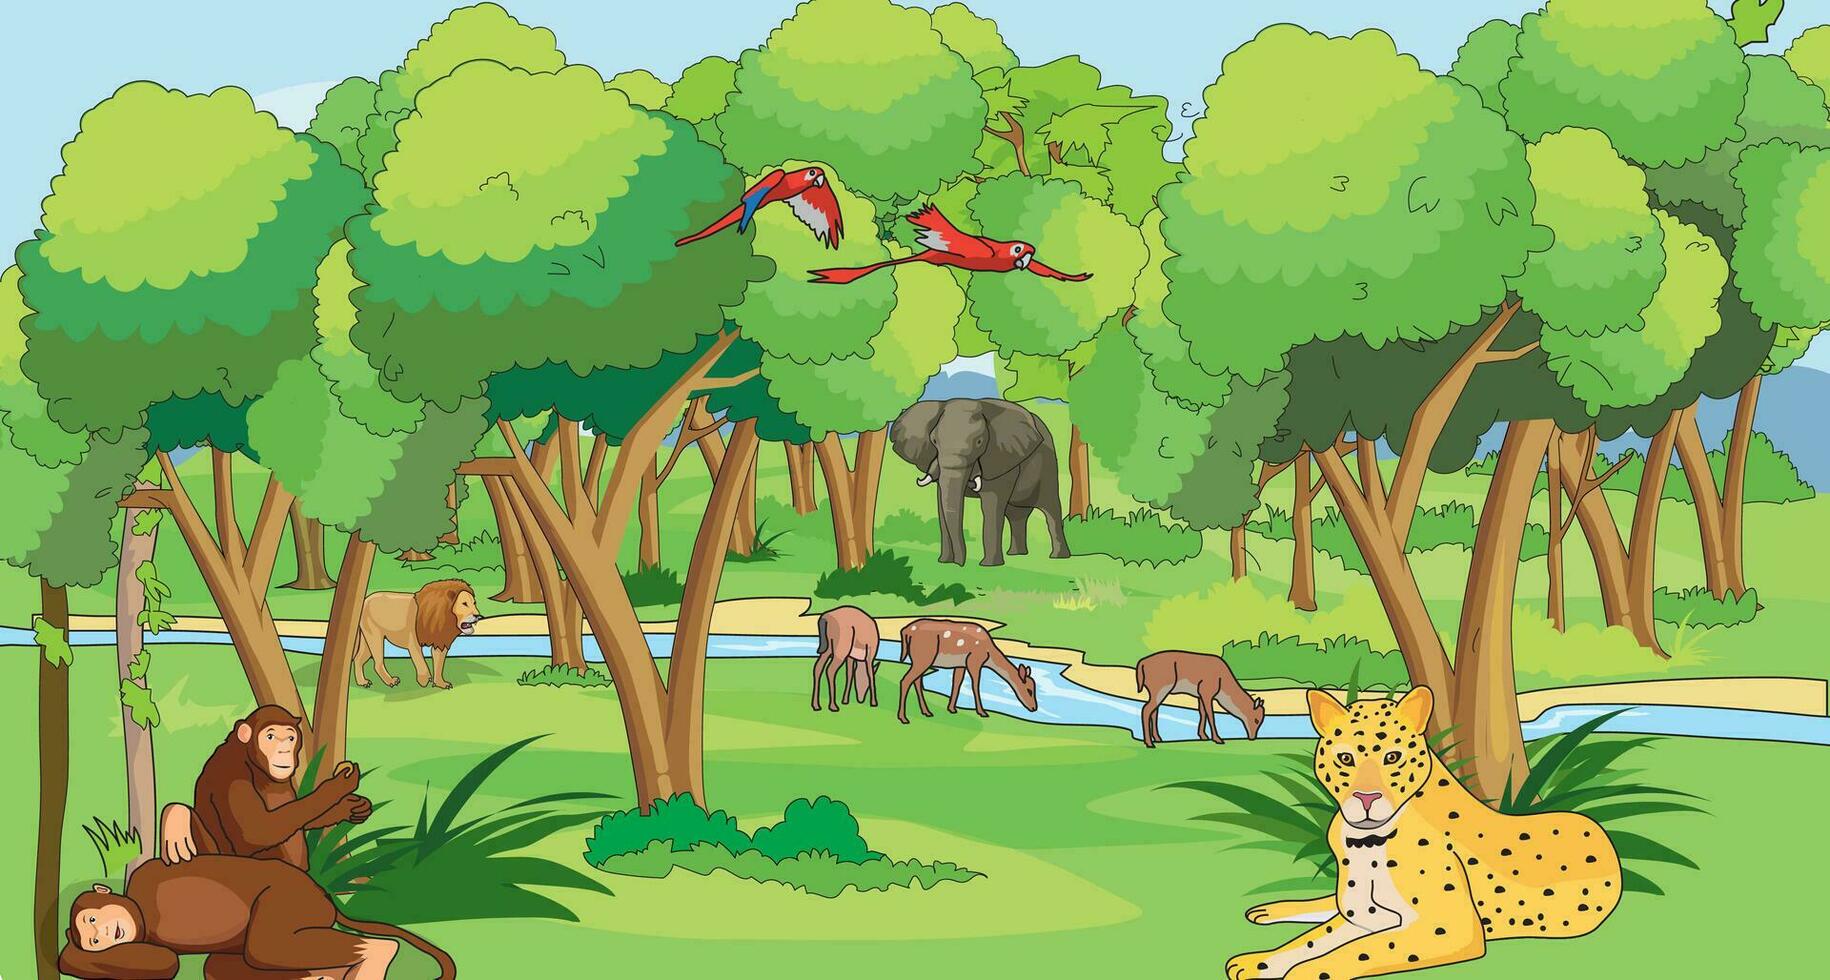 bosque ilustración con aves y salvaje animales a saber guepardo, león, elefante, ciervo y chimpancés vector